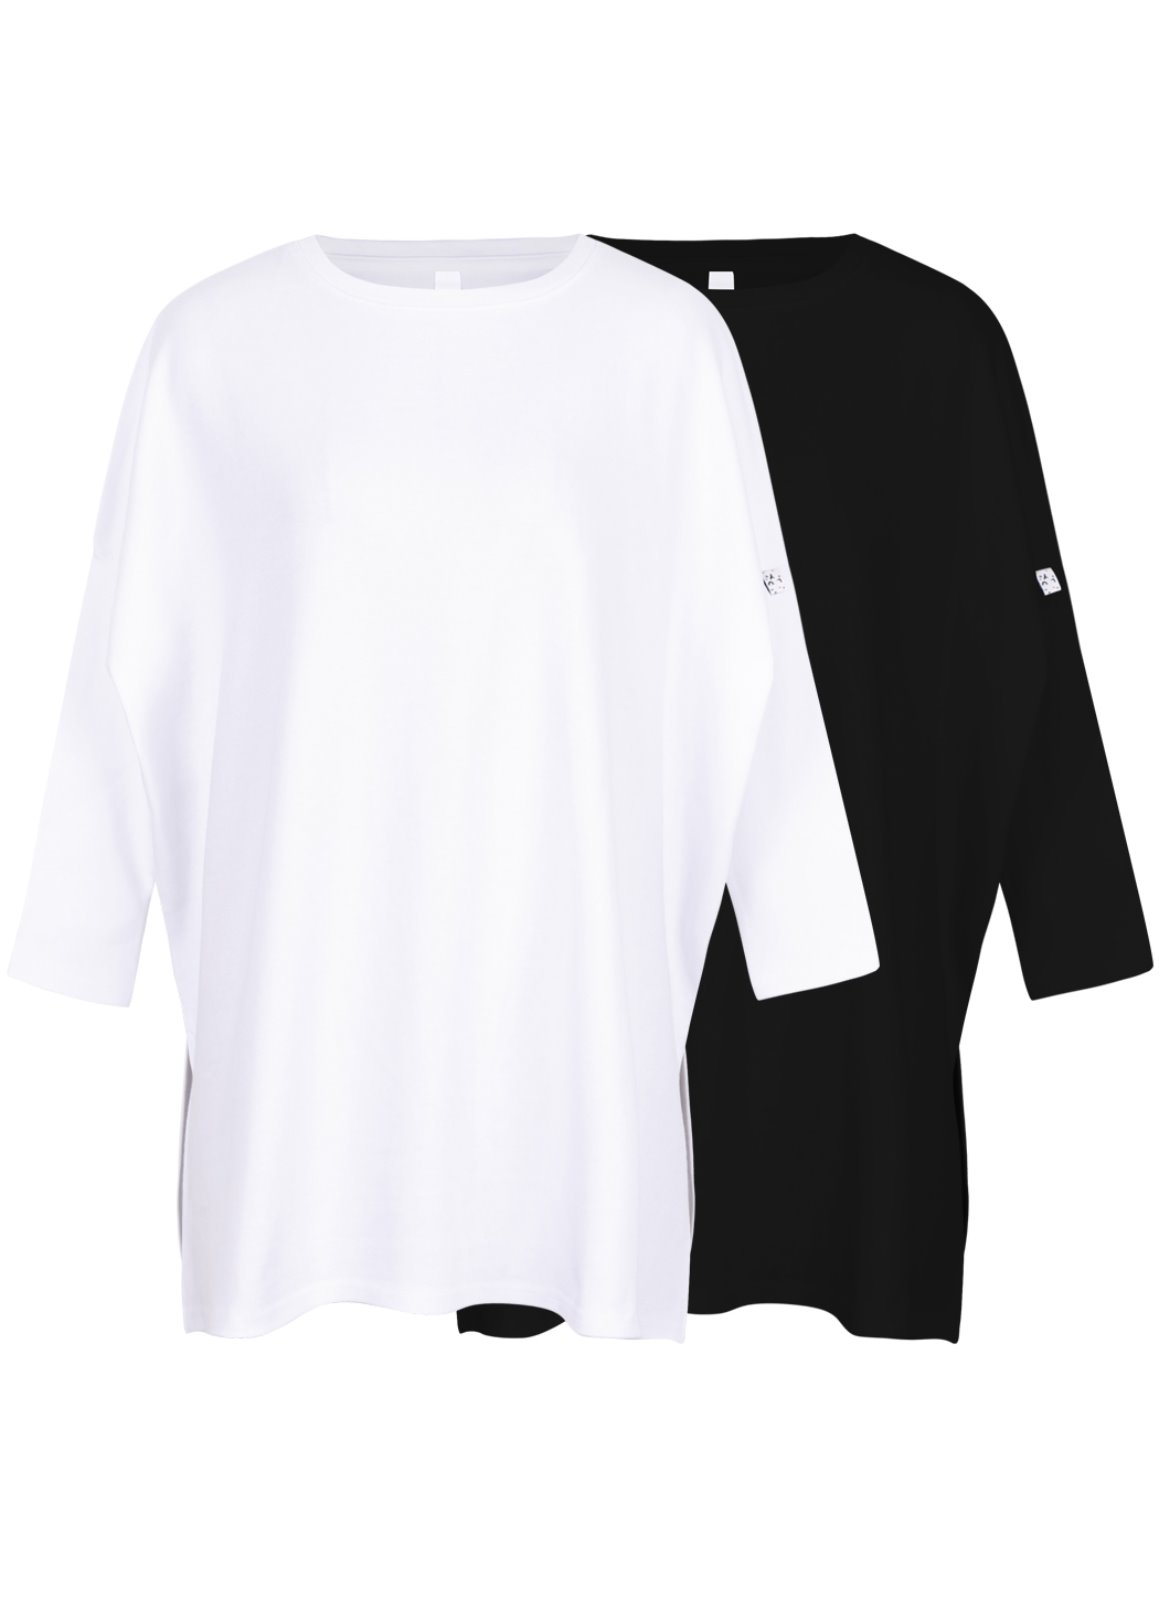  W.Daily span T-shirts  White/Black  